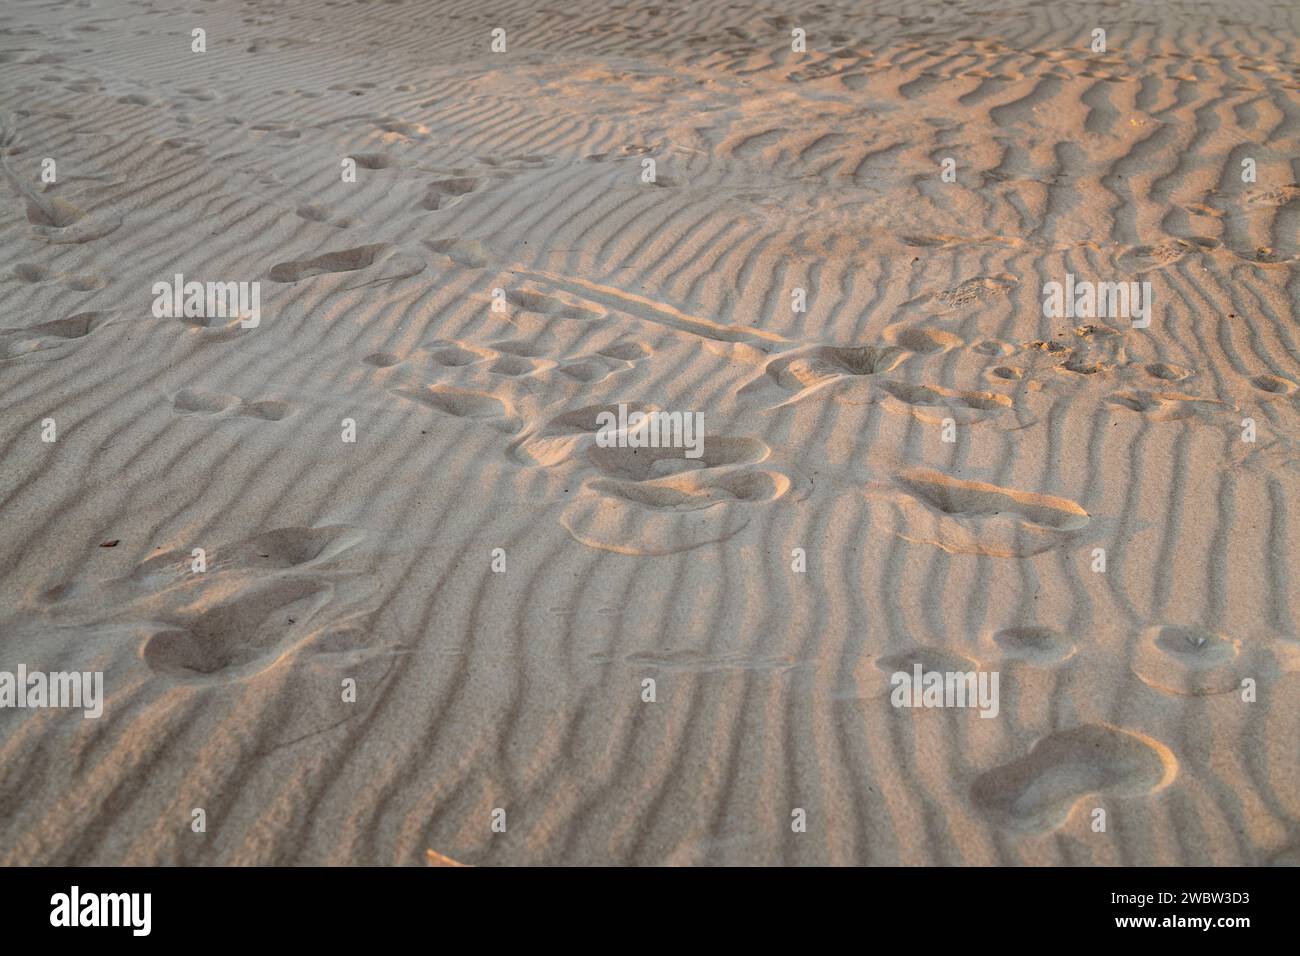 Textur, die Oberfläche einer leichten Sanddüne, bedeckt mit kleinen Wellen der Wellen. Eine Kontrastspur der vertikal verlaufenden menschlichen Schritte. Stockfoto